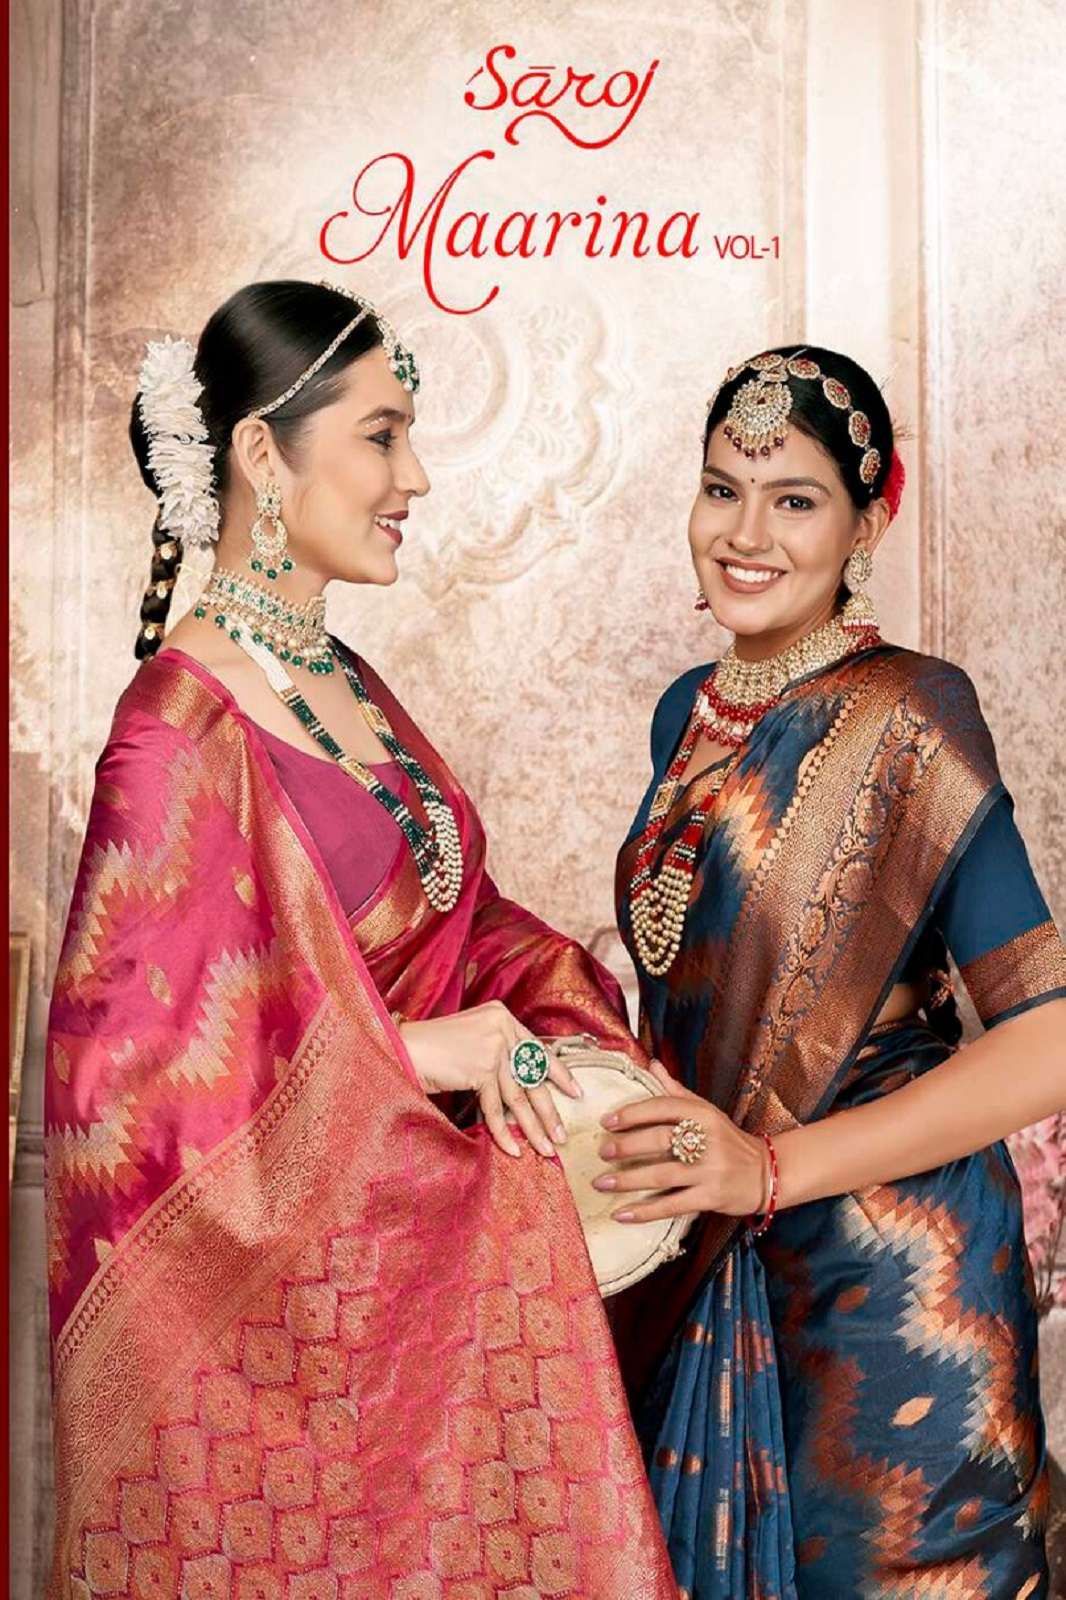 Saroj Maarina Vol-1 Traditional Woman Party Festival & Wedding Wear Organza Saree Collection